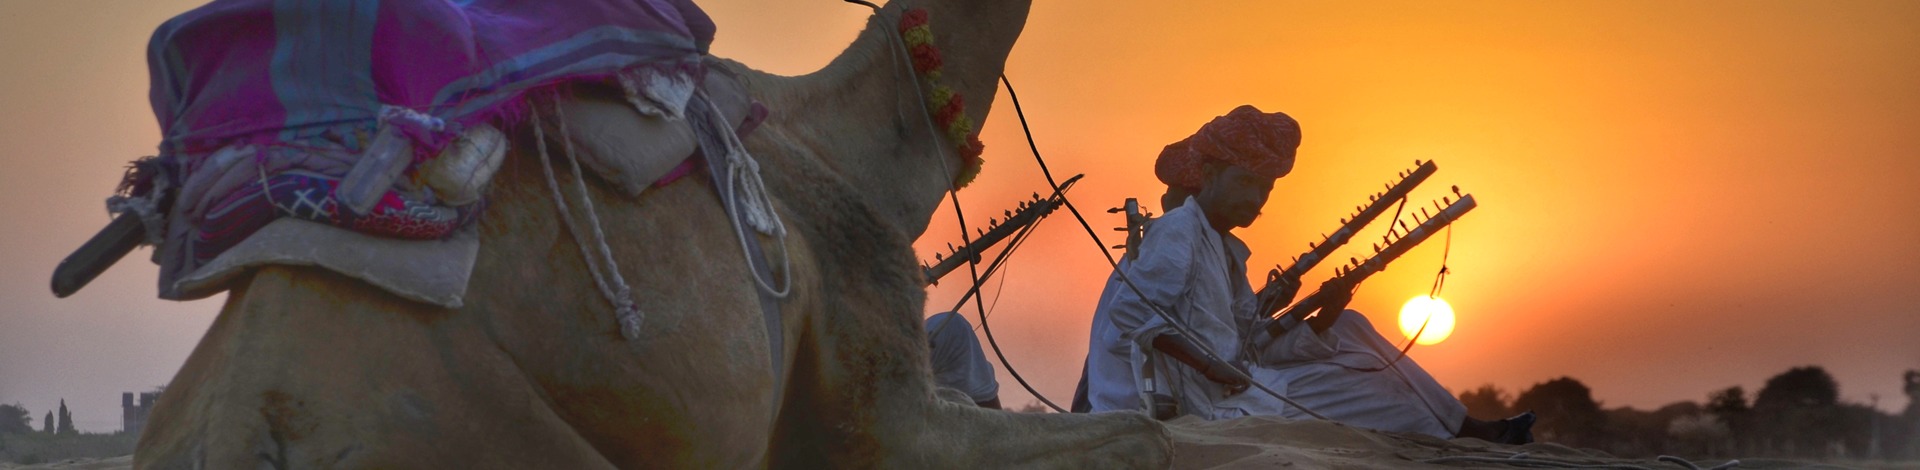 Safari désert chameau dromadaire Rajasthan coucher soleil